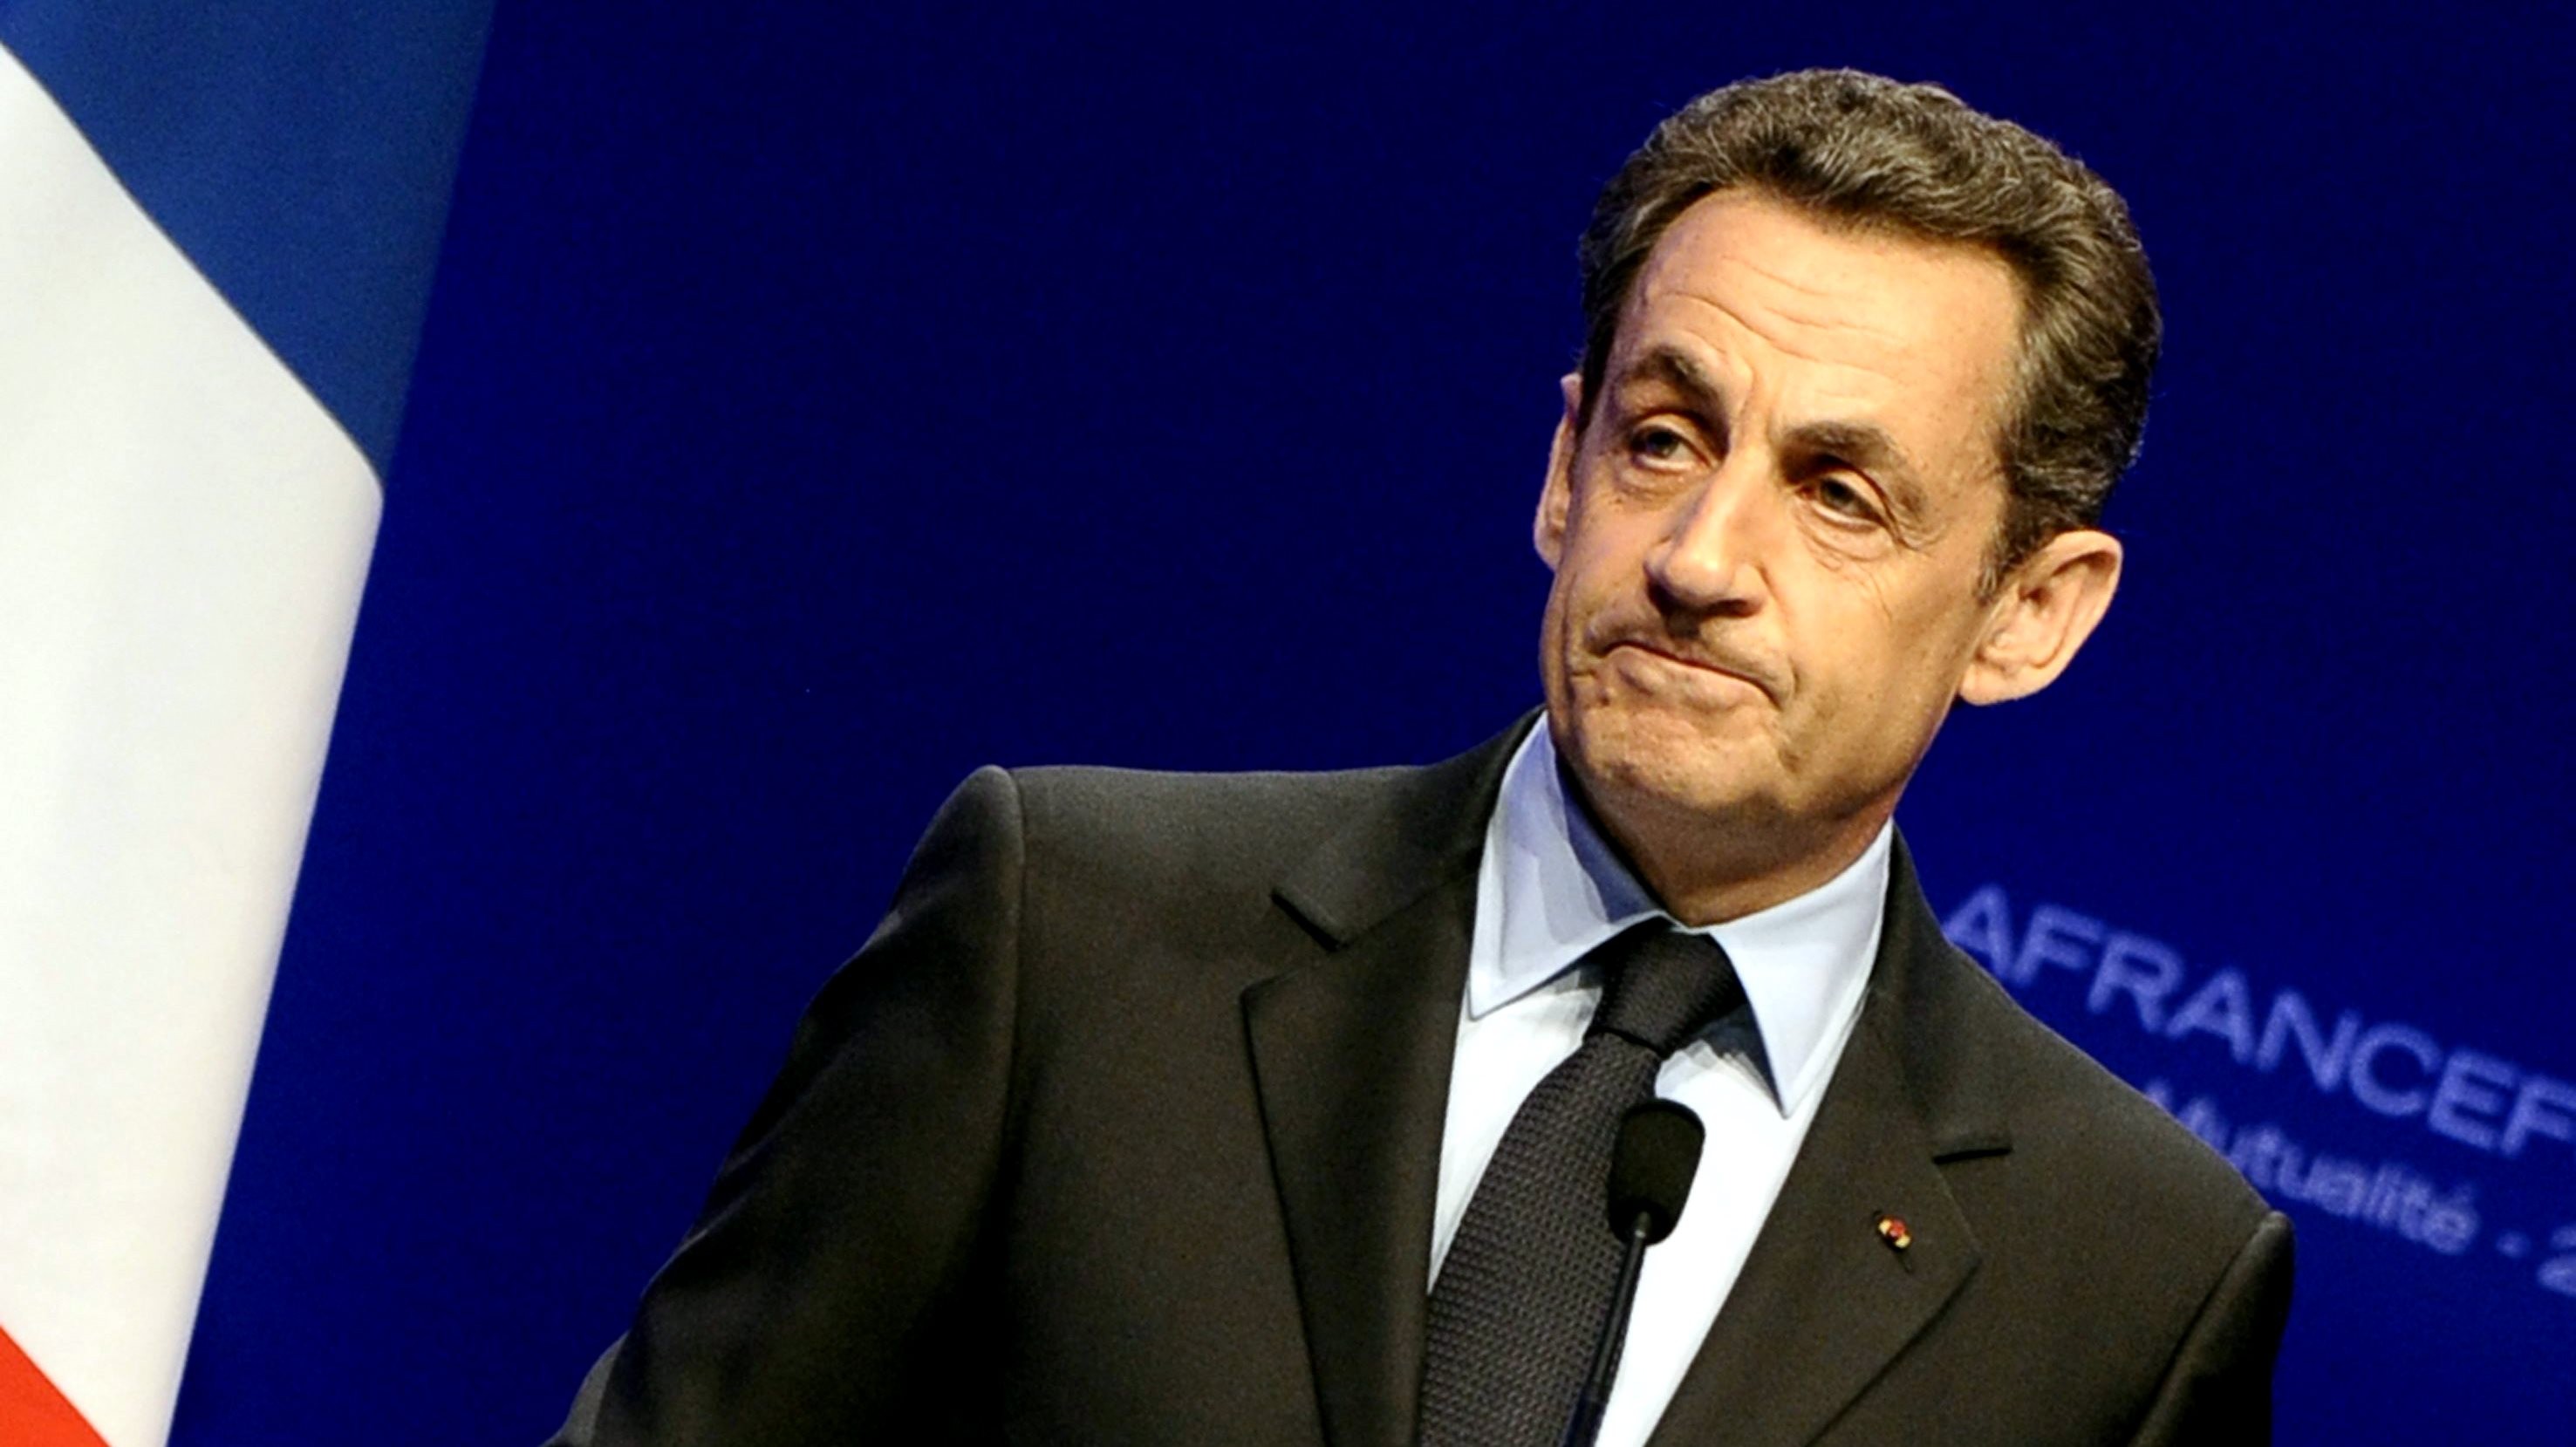 Nicolas_Sarkozy_Francúzsko_prezident_prvé kolo_porazený